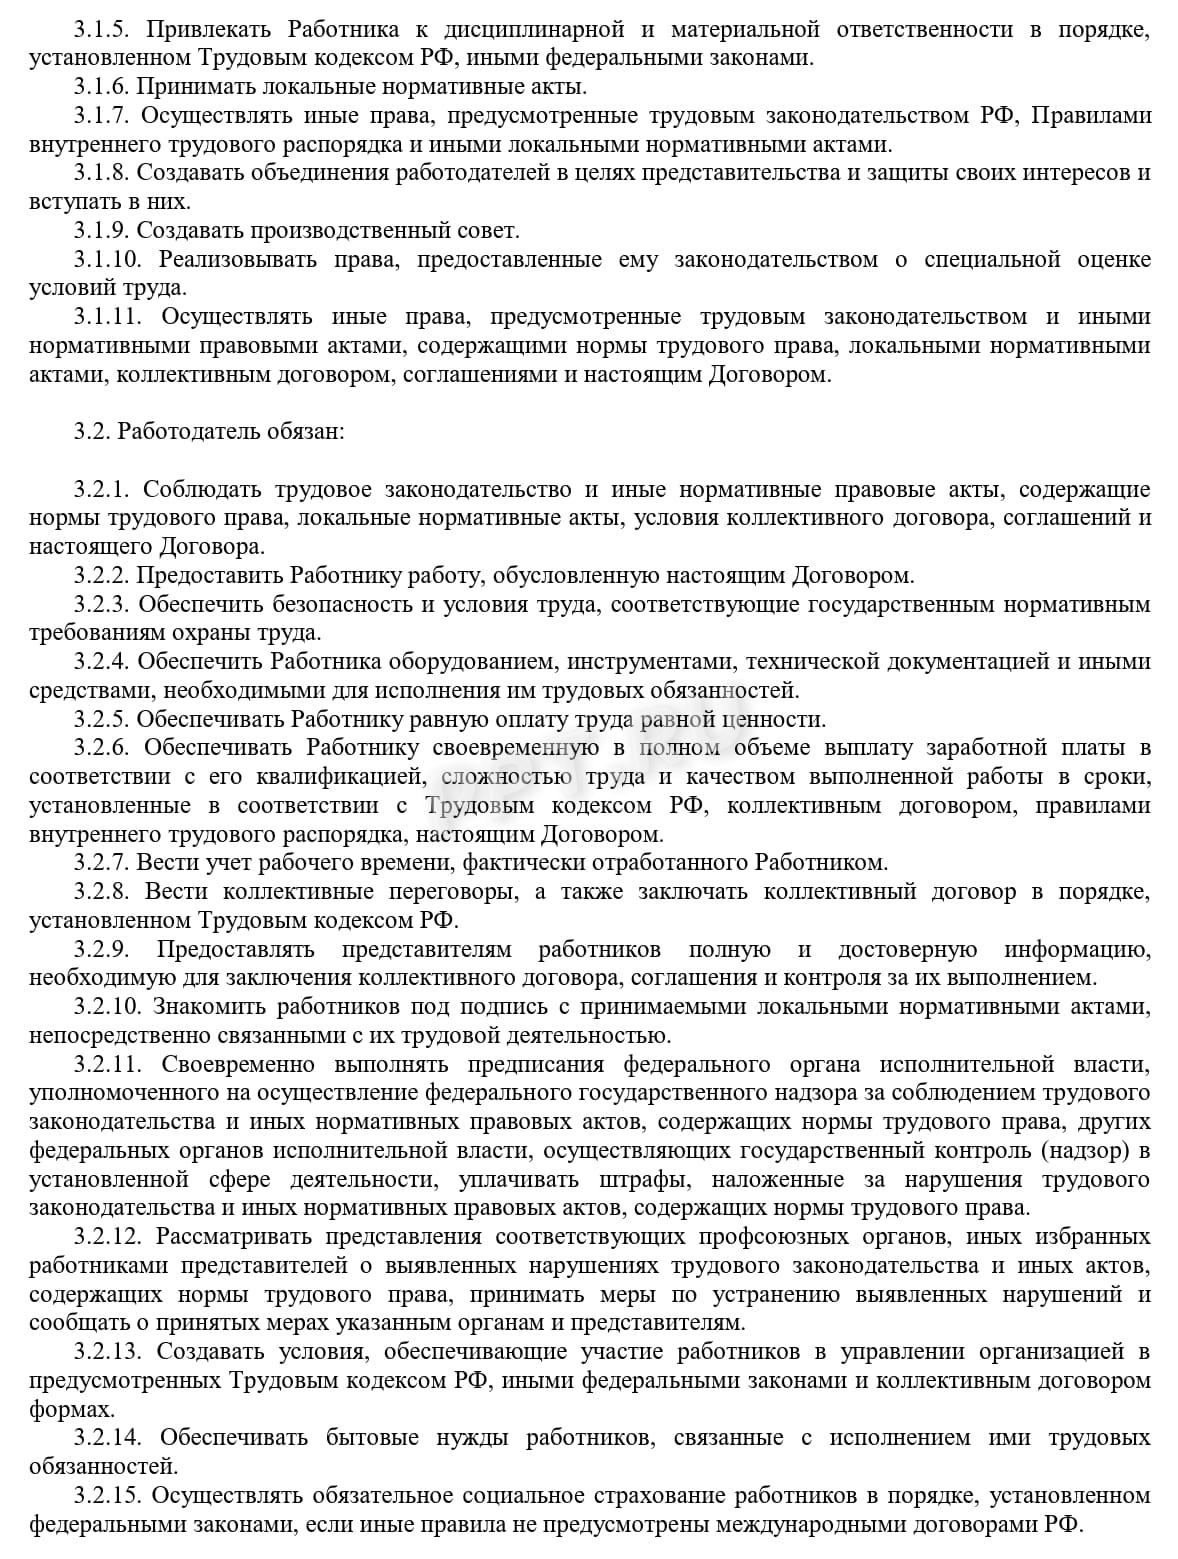 Образец трудового договора с киргизом, стр. 3